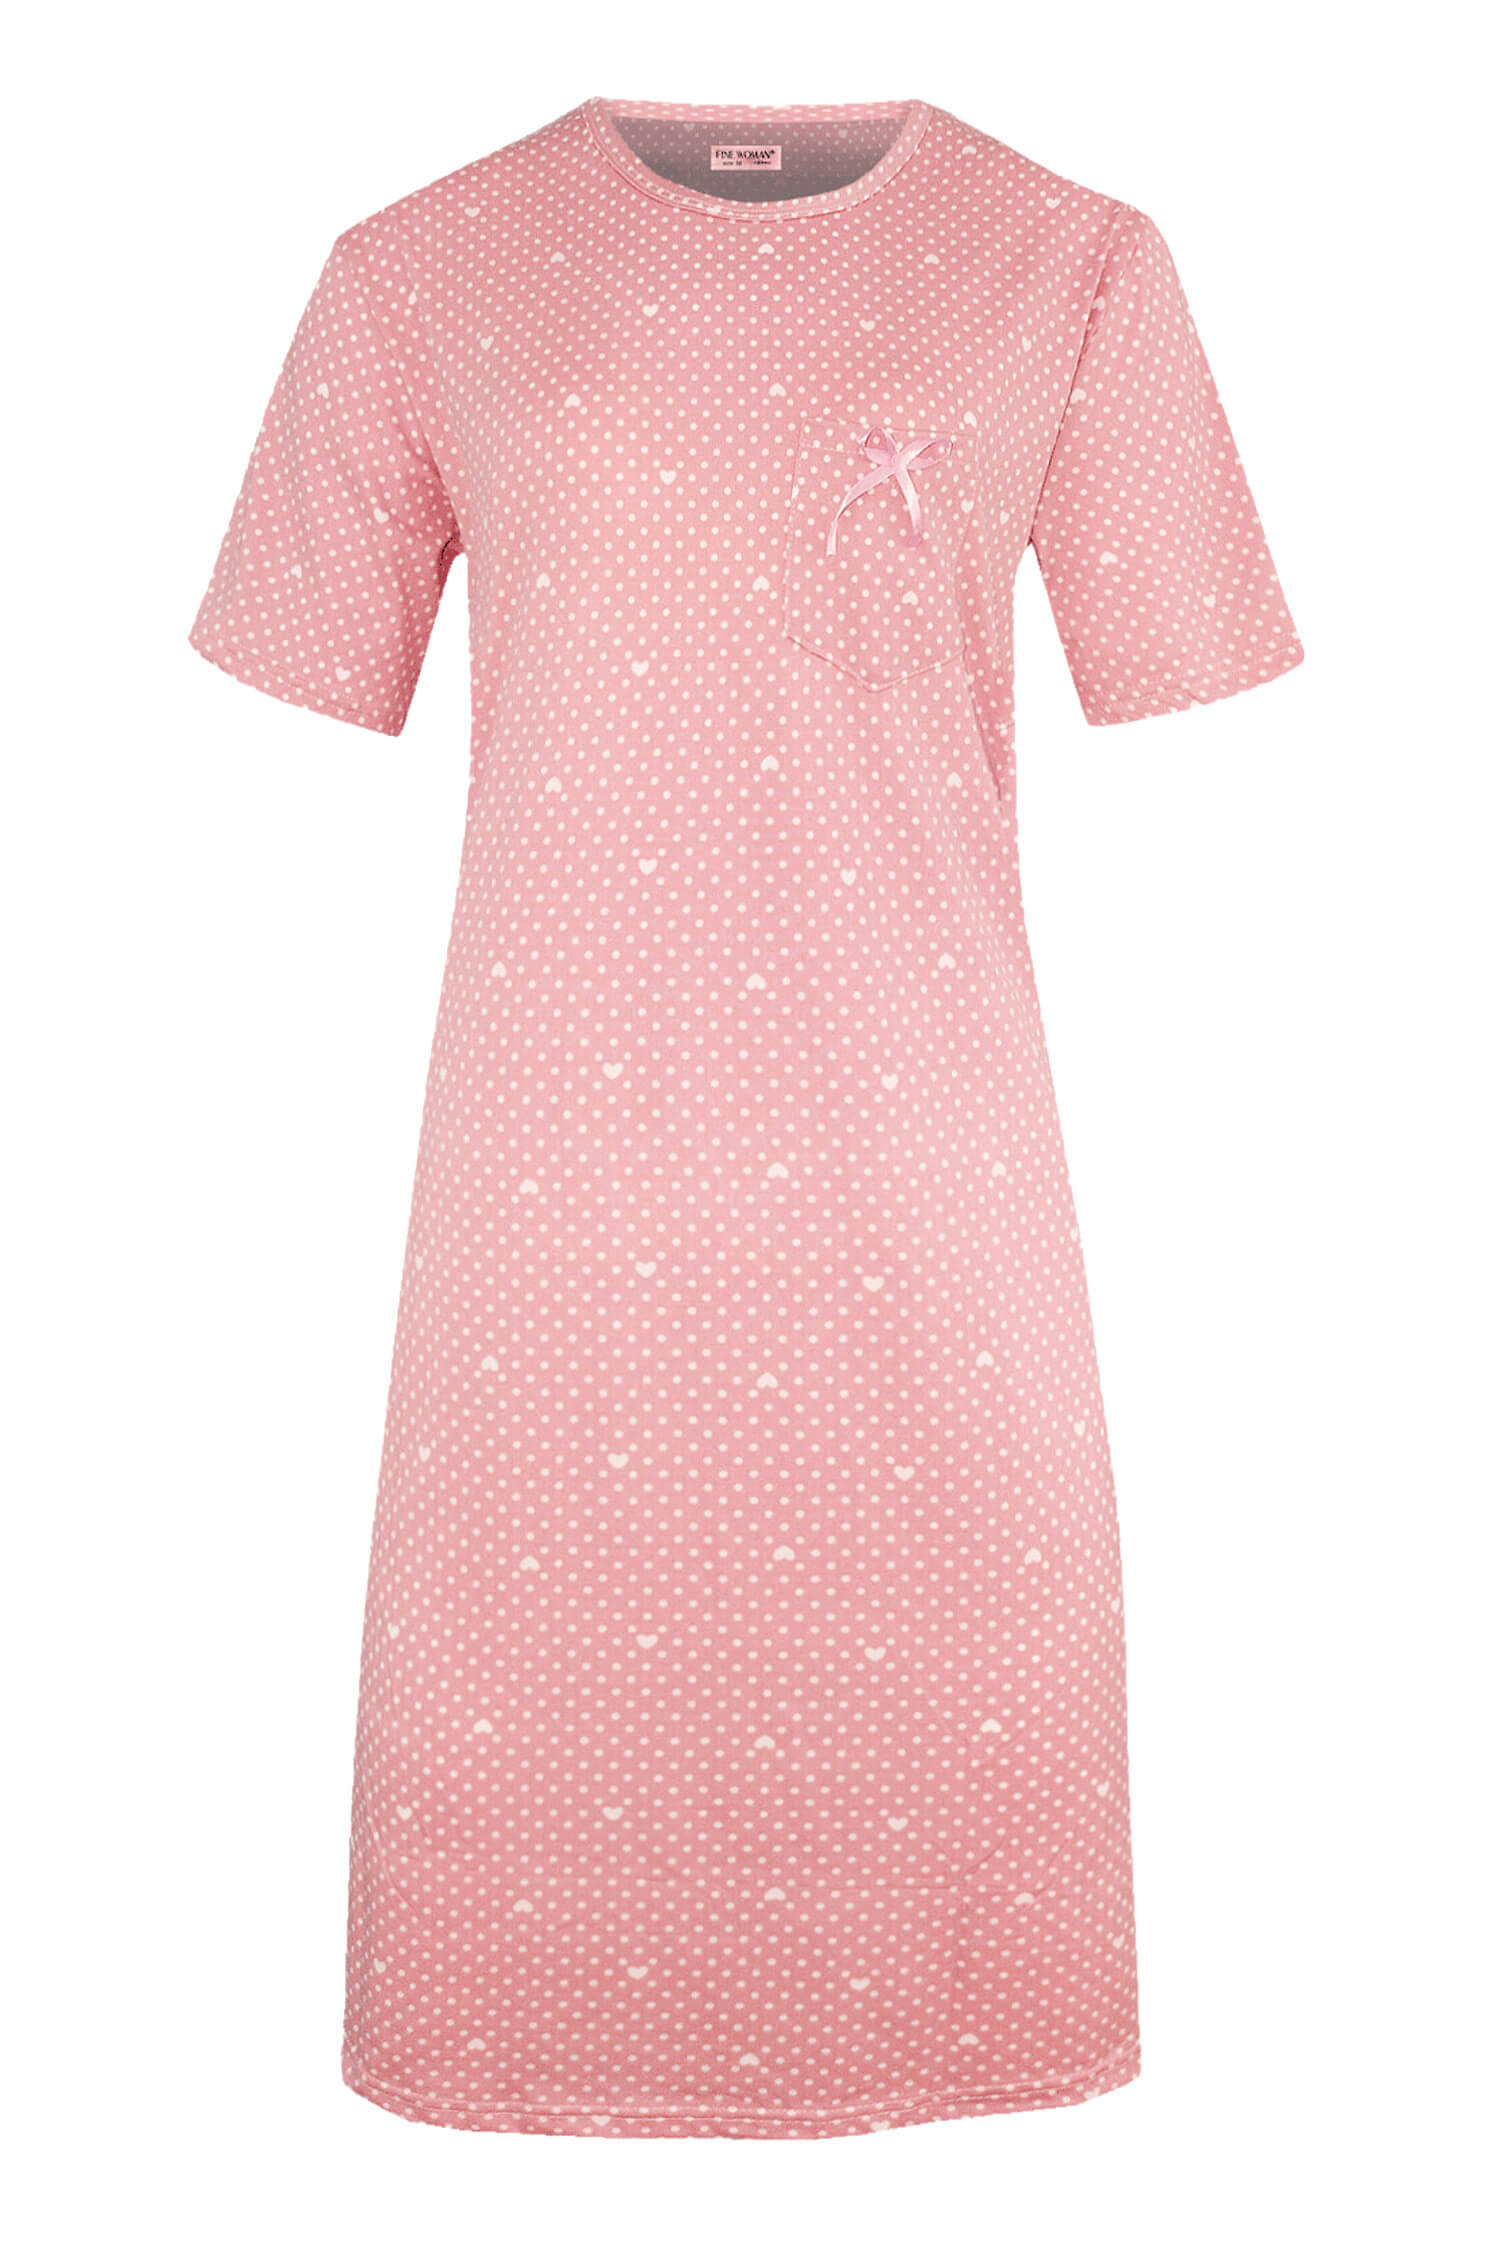 Danuška dámská noční košile s puntíky 6528 XL světle růžová